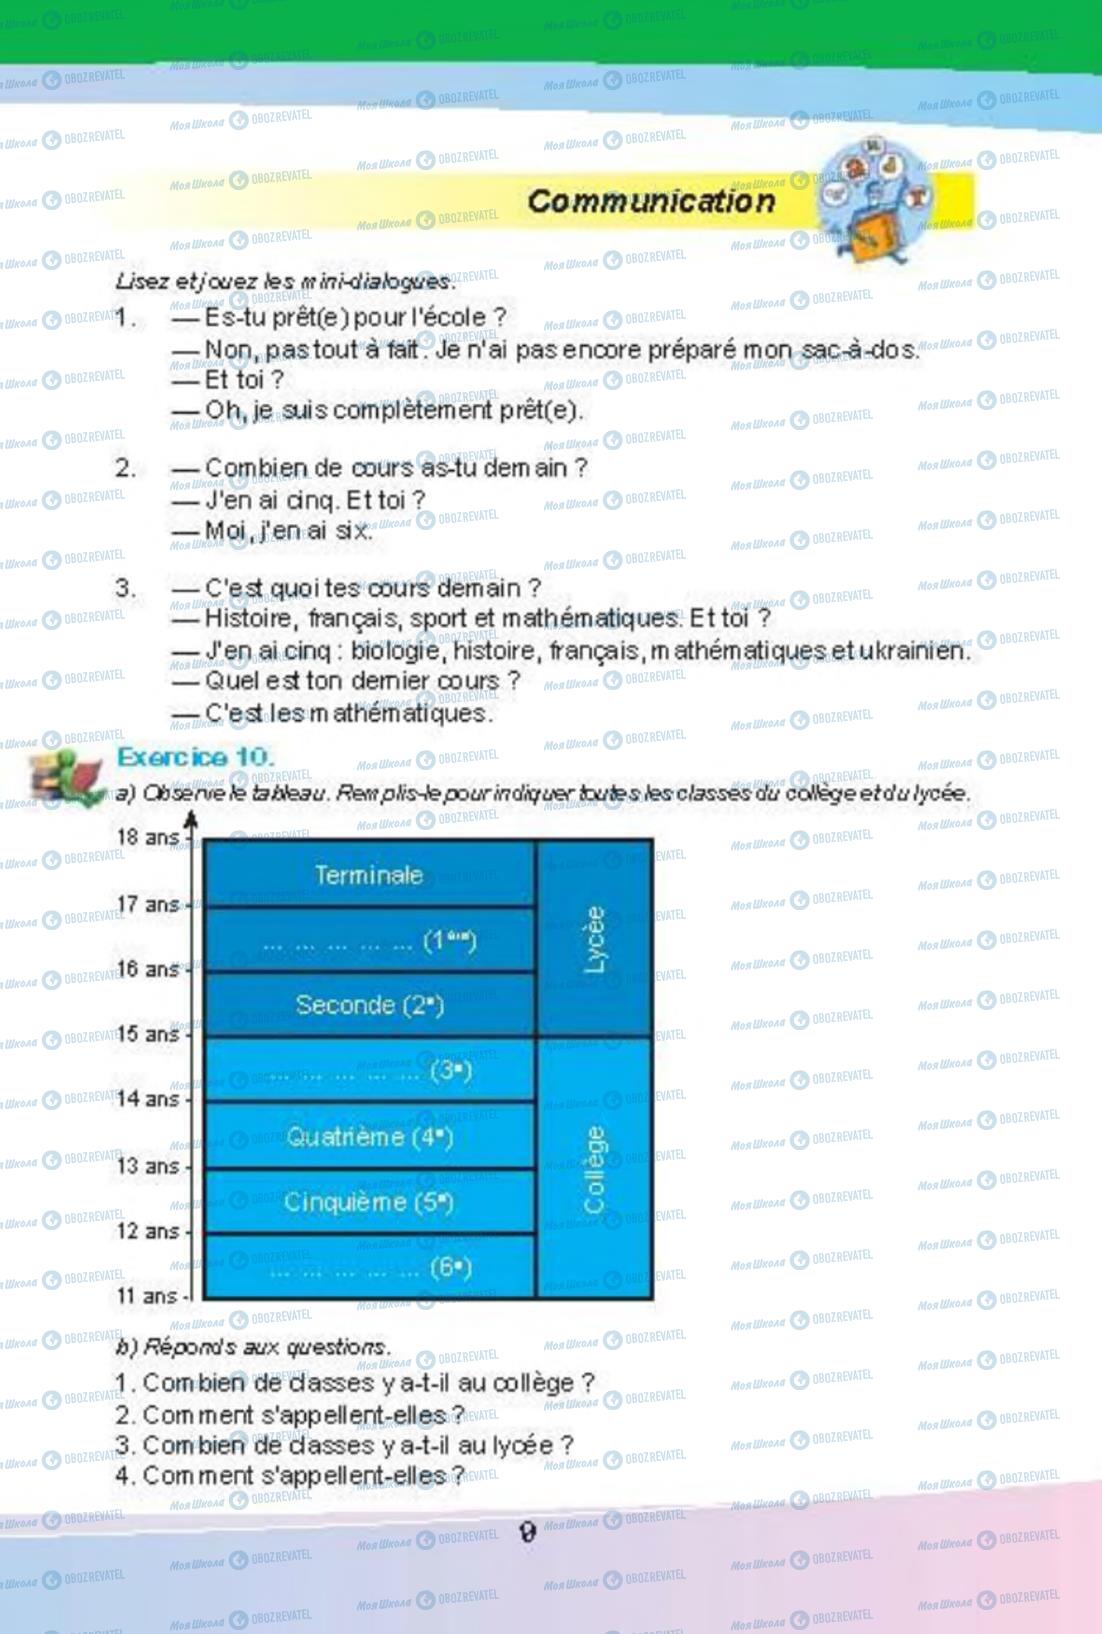 Підручники Французька мова 8 клас сторінка 9